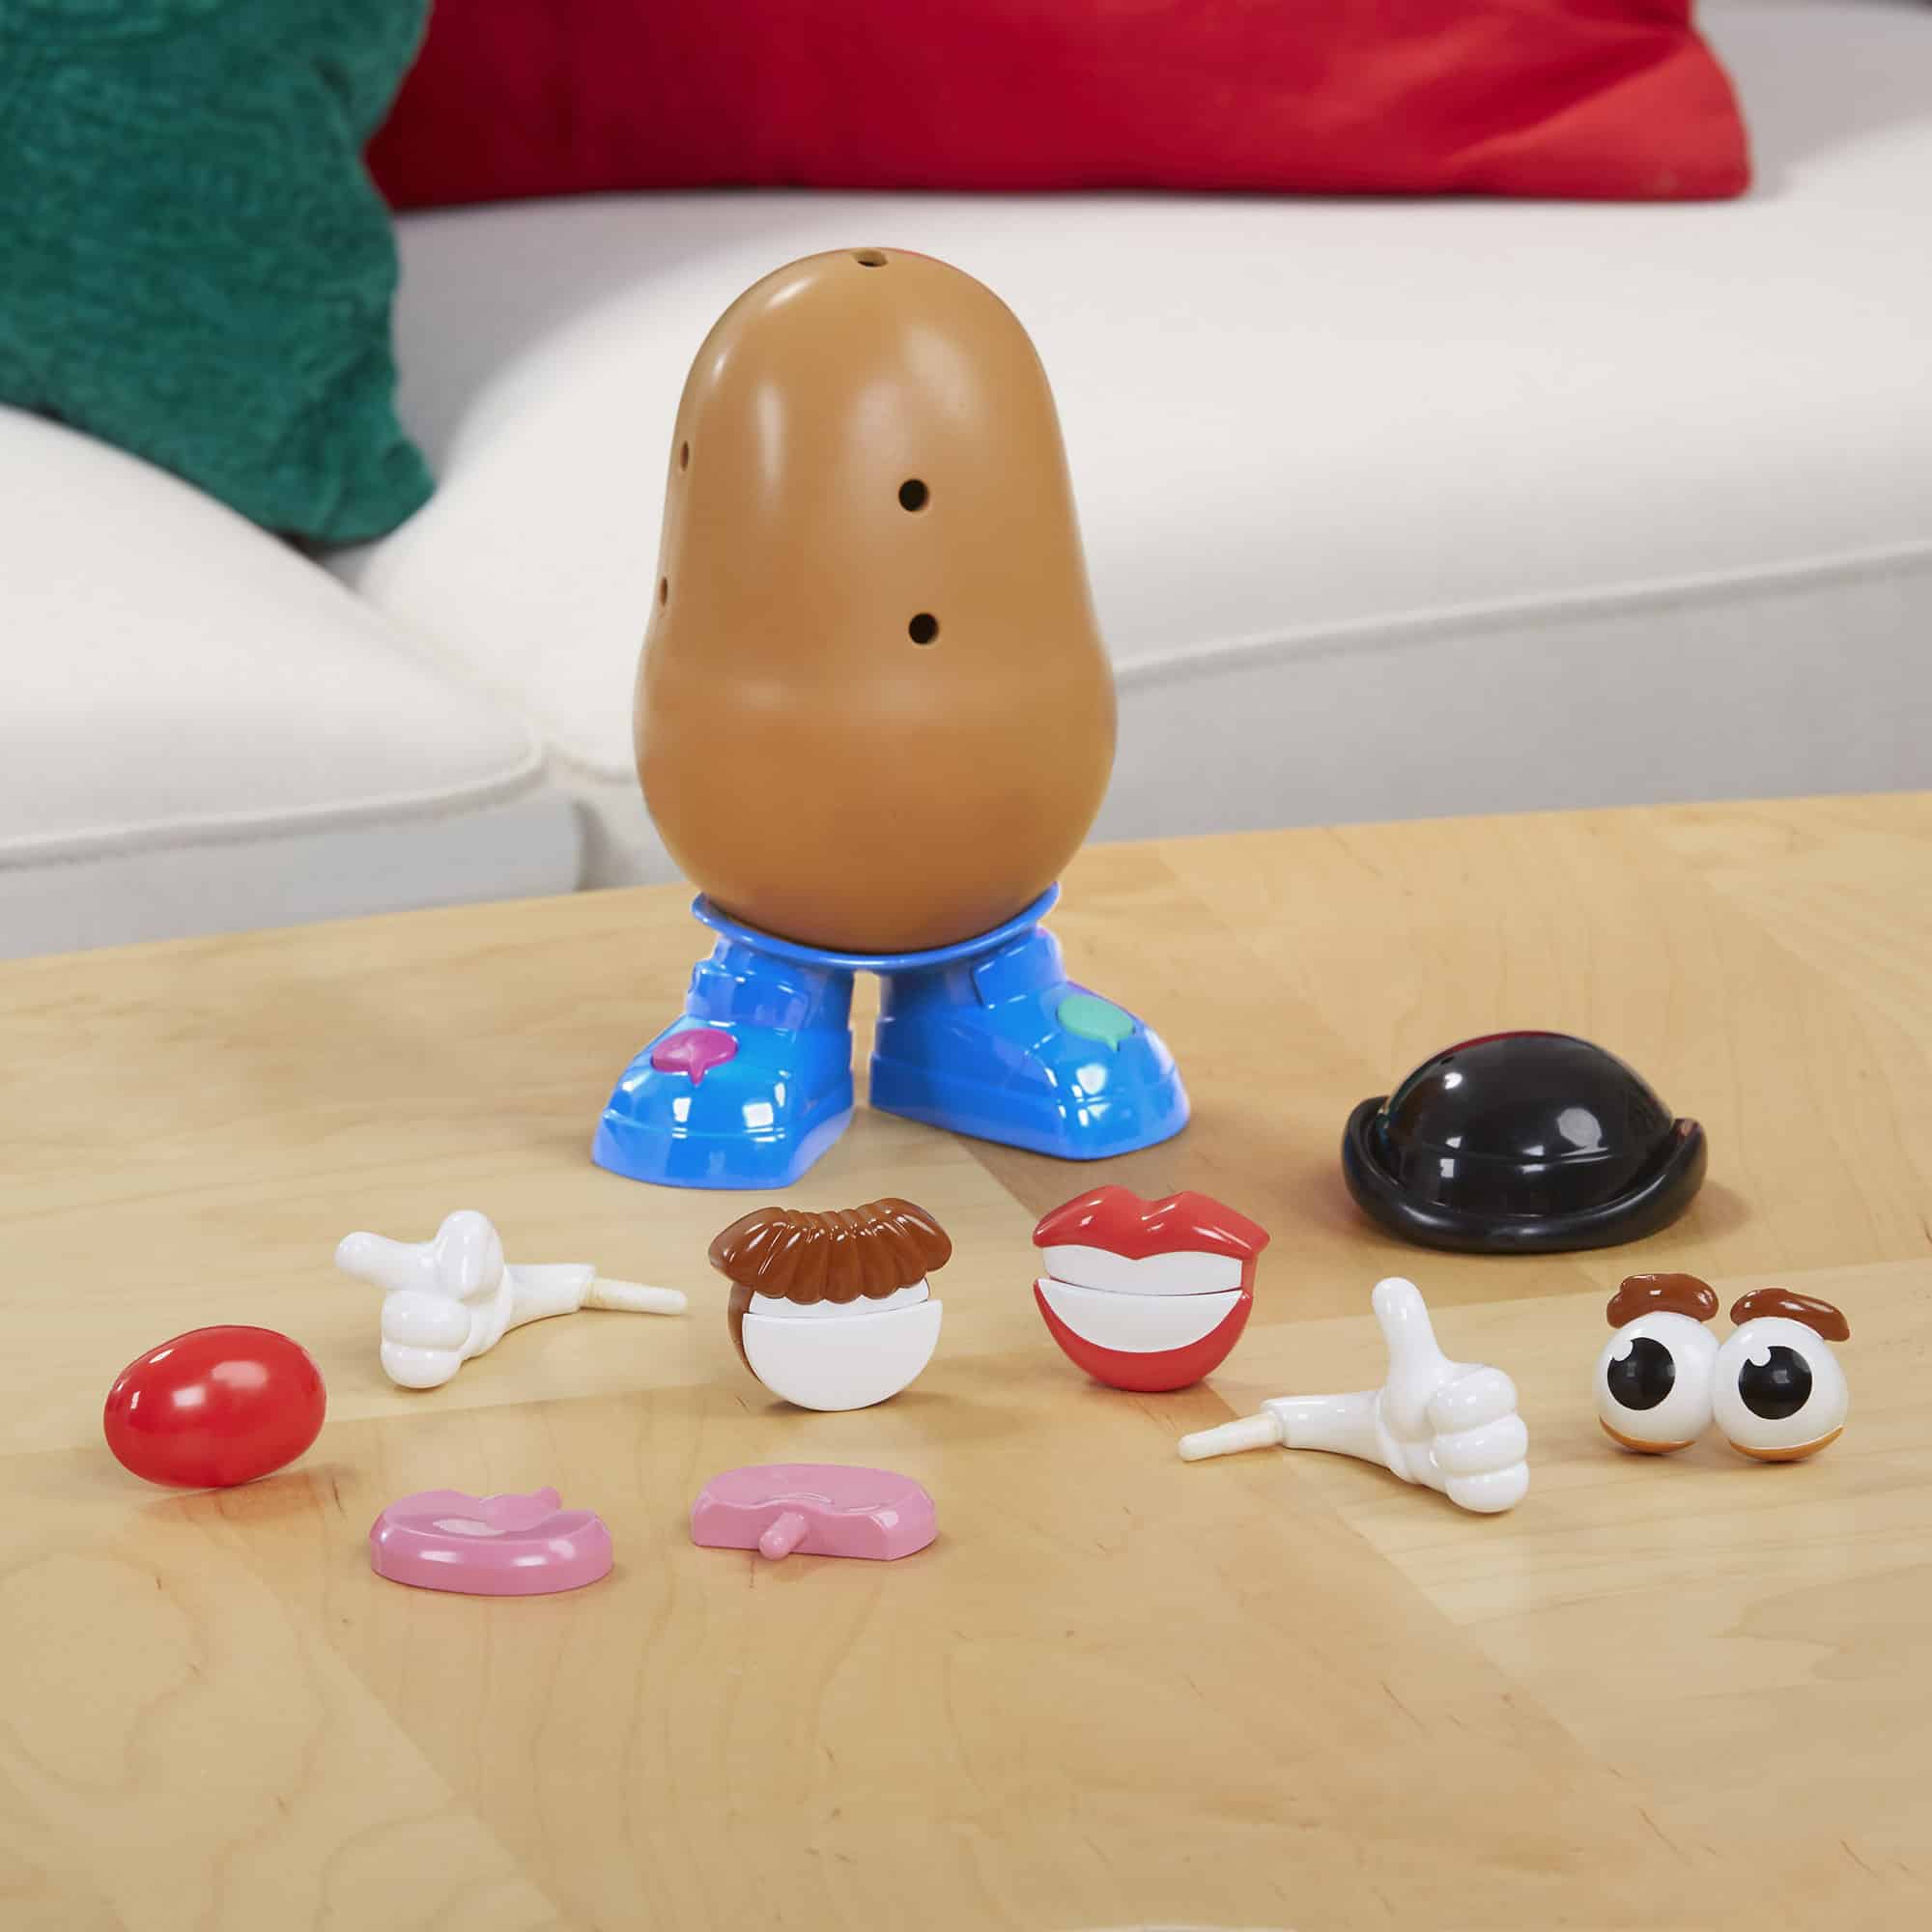 Mr Potato Head - Movin' Lips